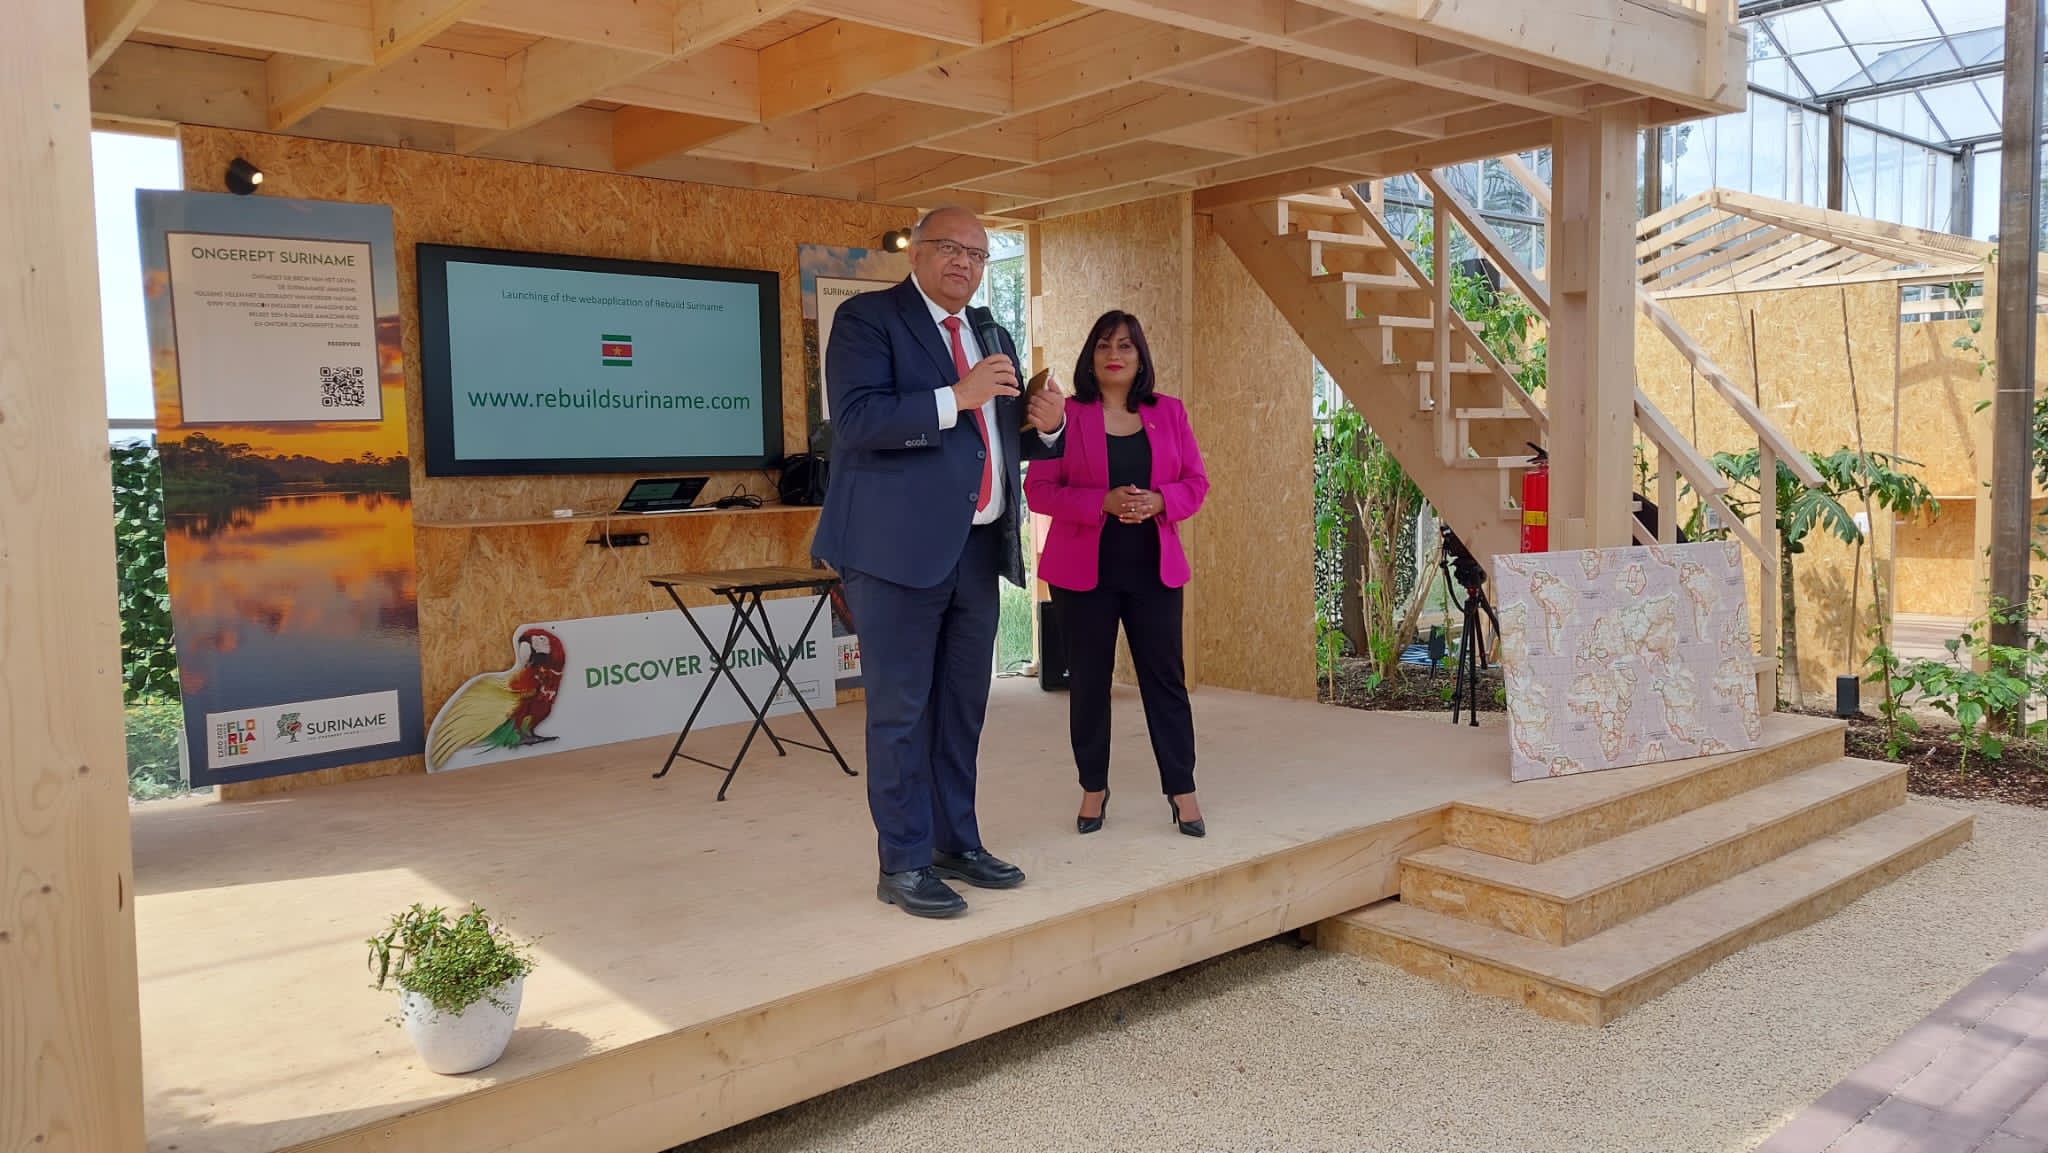 Minister Kuldipsingh van Economische Zaken introduceert Rebuild Suriname